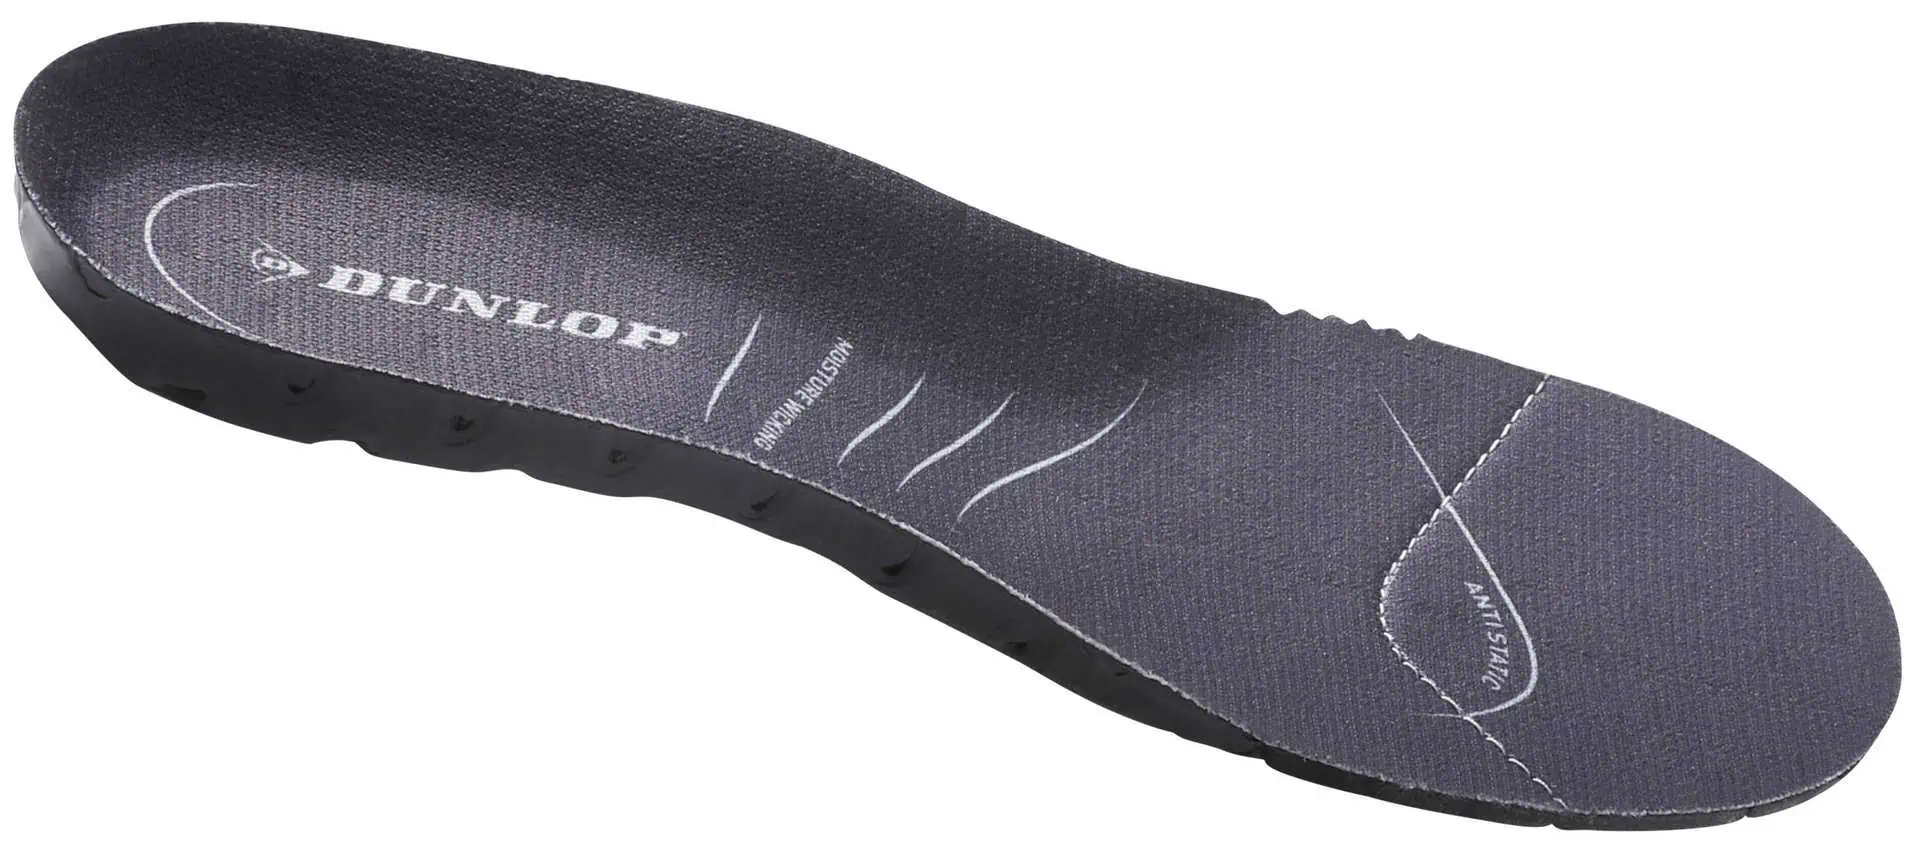 Einlegesohle Dunlop Gr. 43 Comfort (für FieldPRO Stiefel)